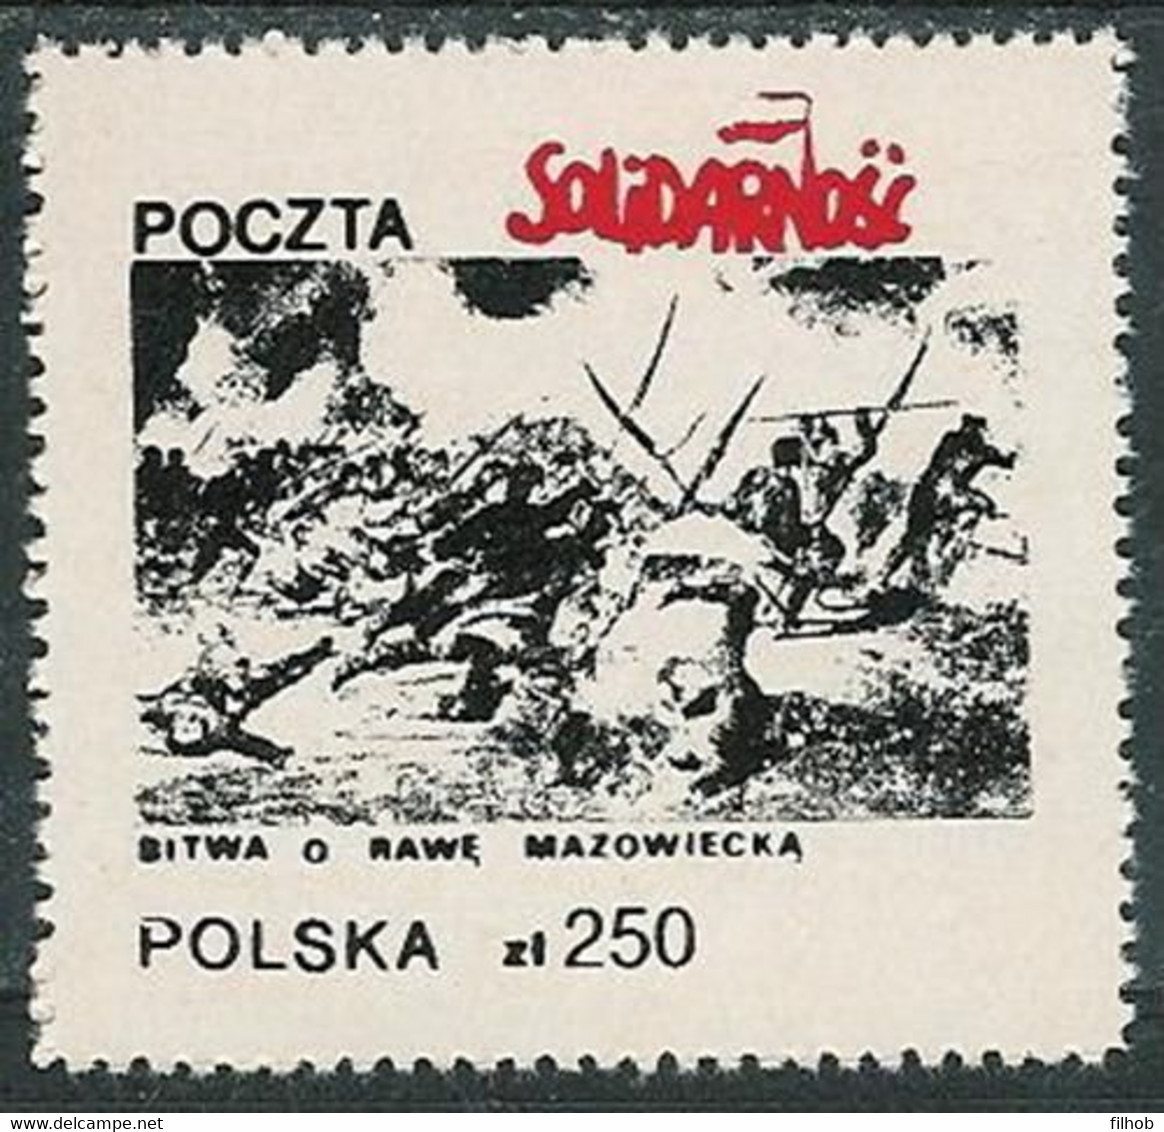 Poland SOLIDARITY (S092): Battle Of Rawa Mazowiecka - Solidarnosc Labels